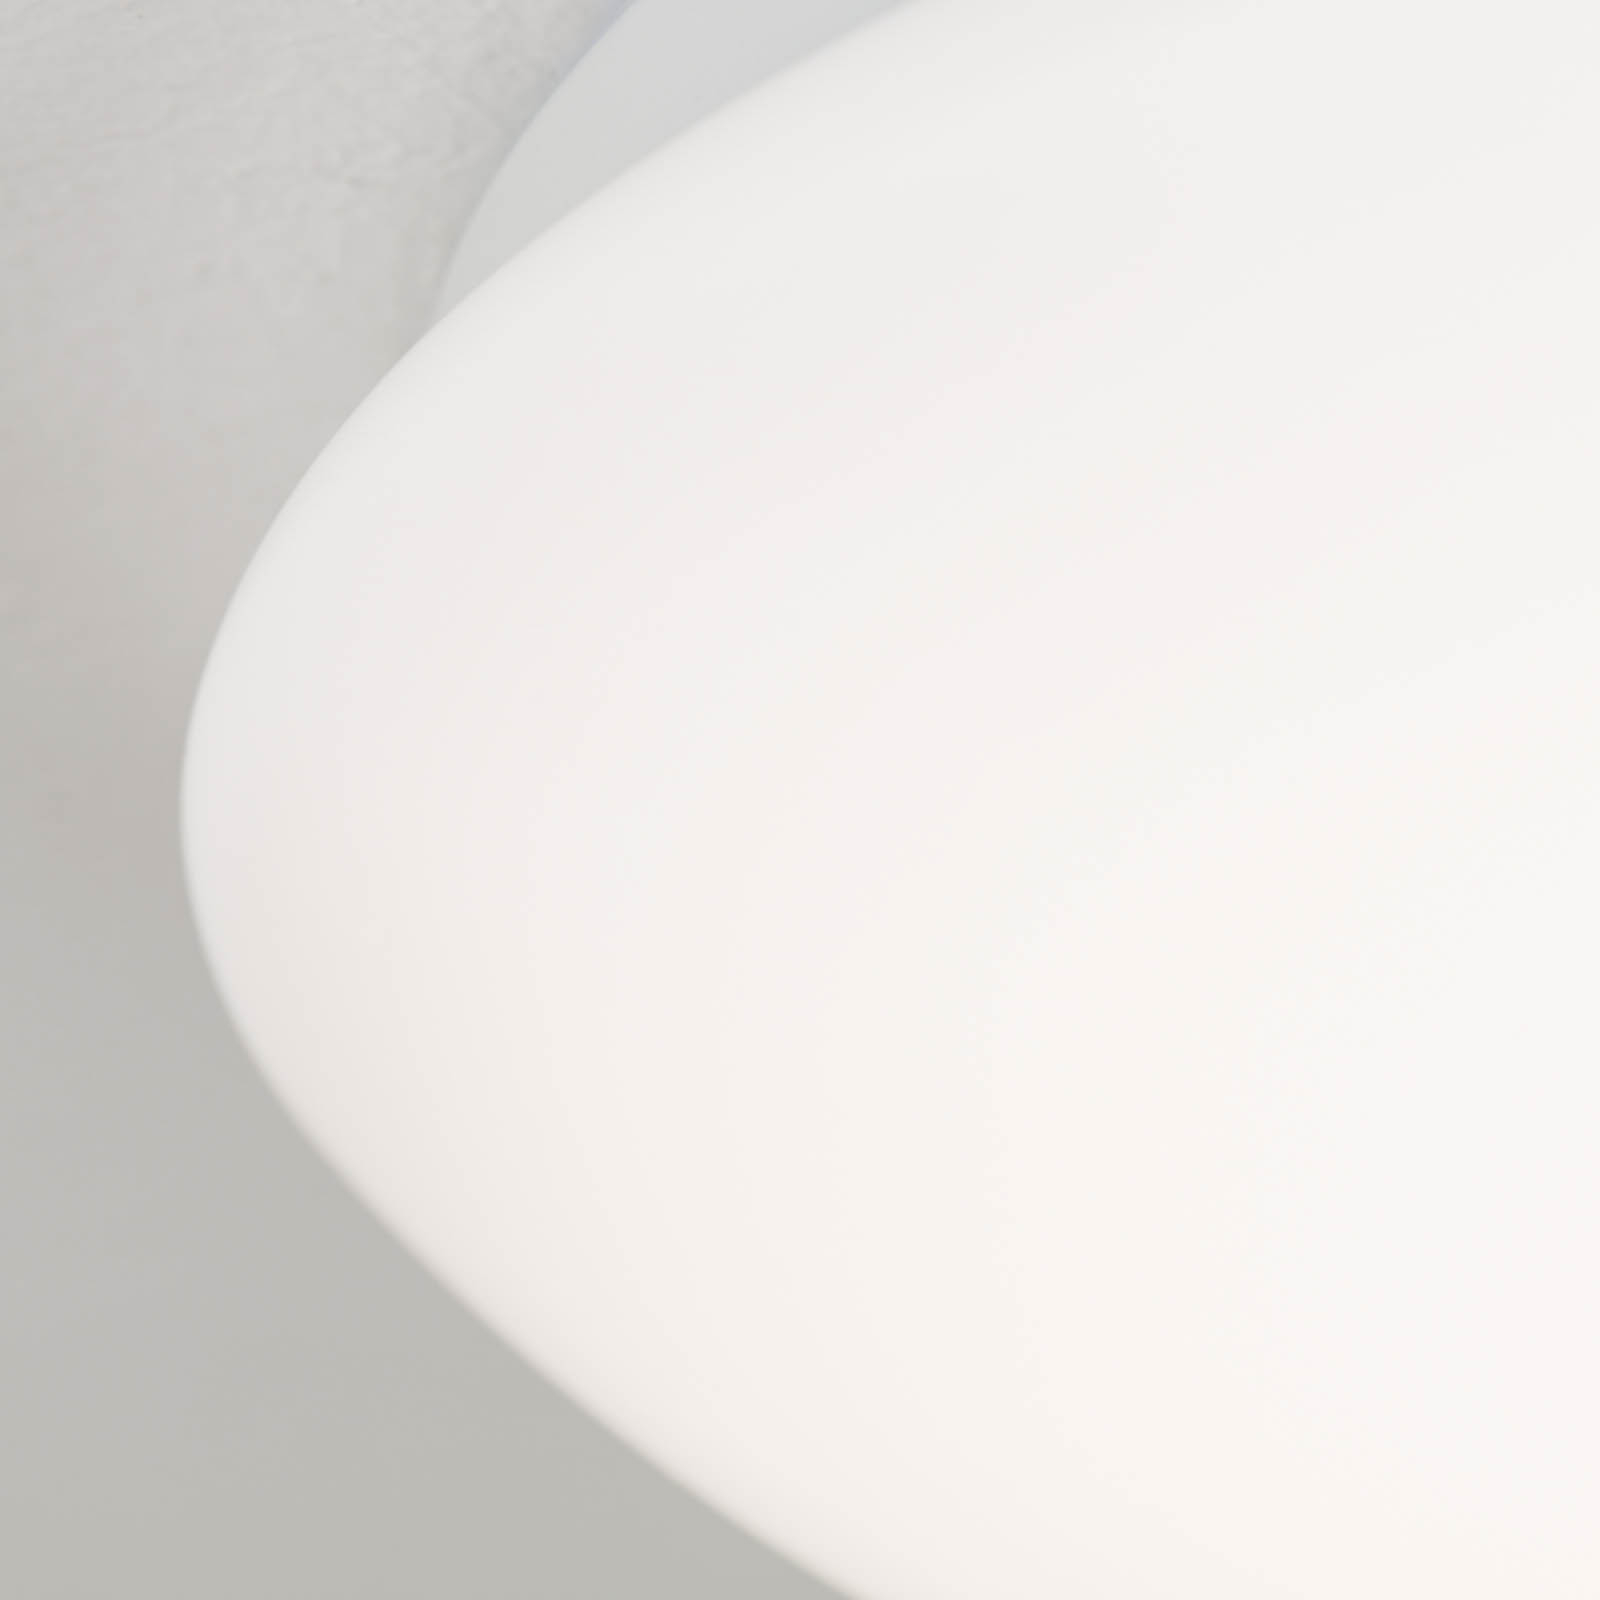 LED stropné svietidlo Nedo zakrivené, Ø 28,5 cm